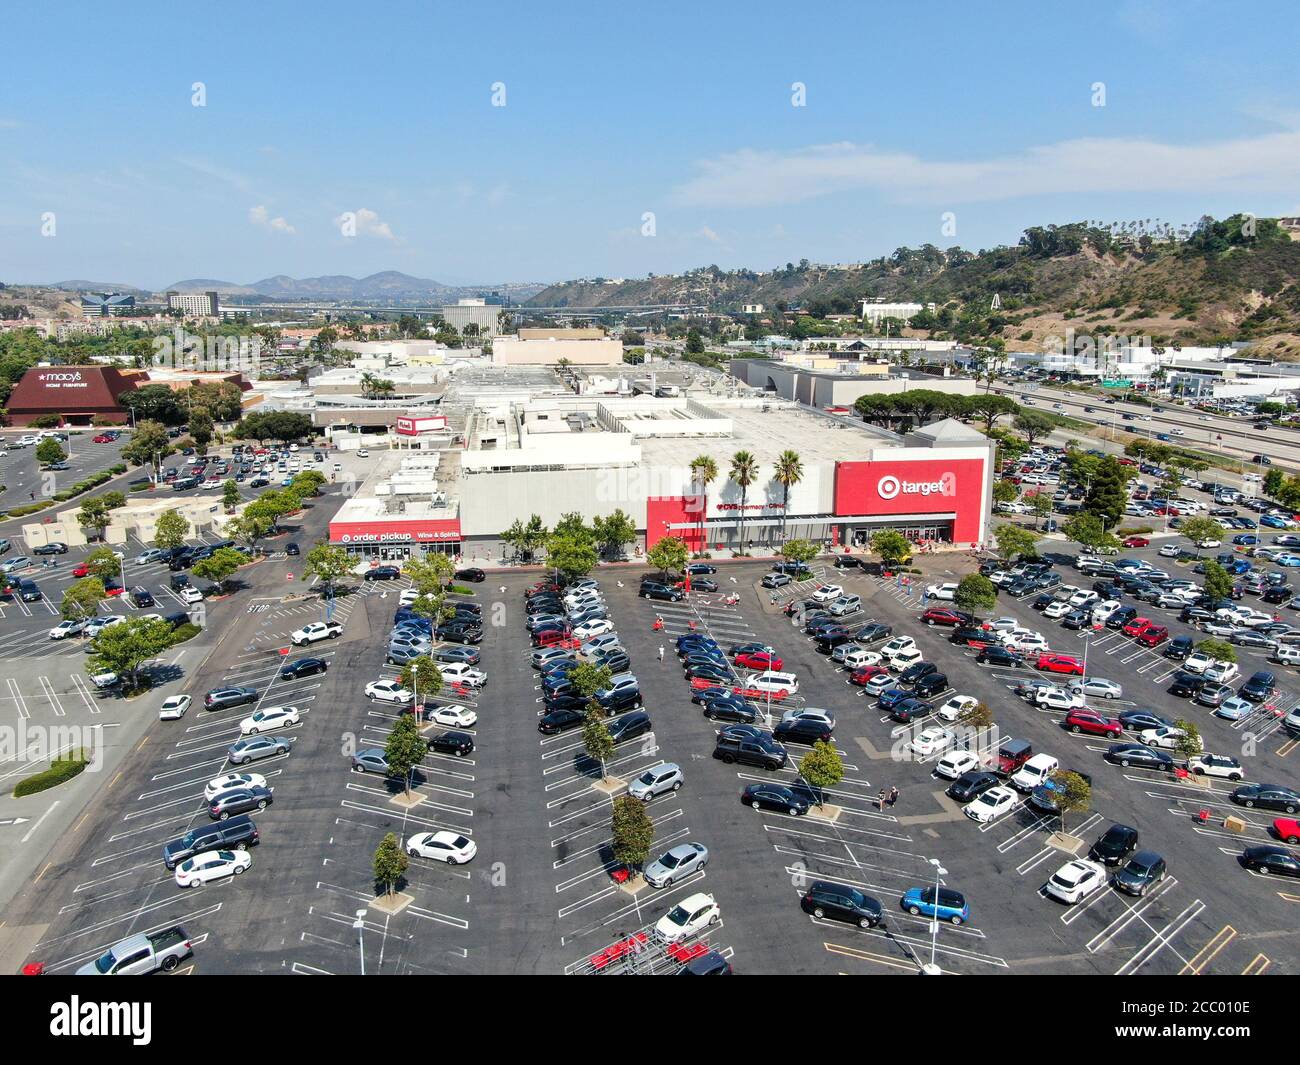 Zielgruppe: Einzelhandelsgeschäft. Target verkauft Haushaltswaren, Bekleidung und Elektronik. San Diego, Kalifornien, USA, 16. August 2020 Stockfoto